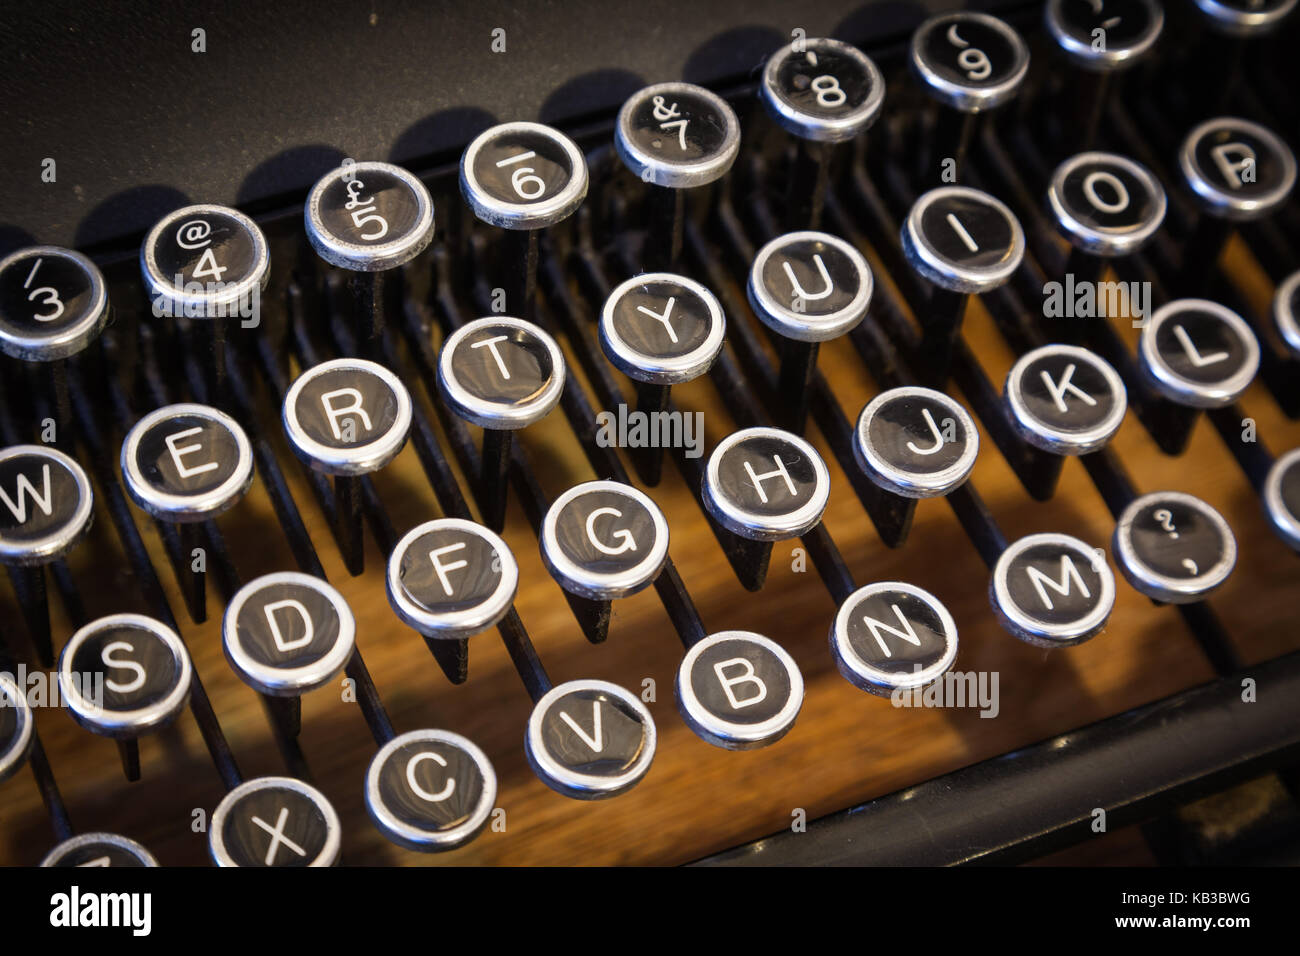 A typewriter keyboard Stock Photo